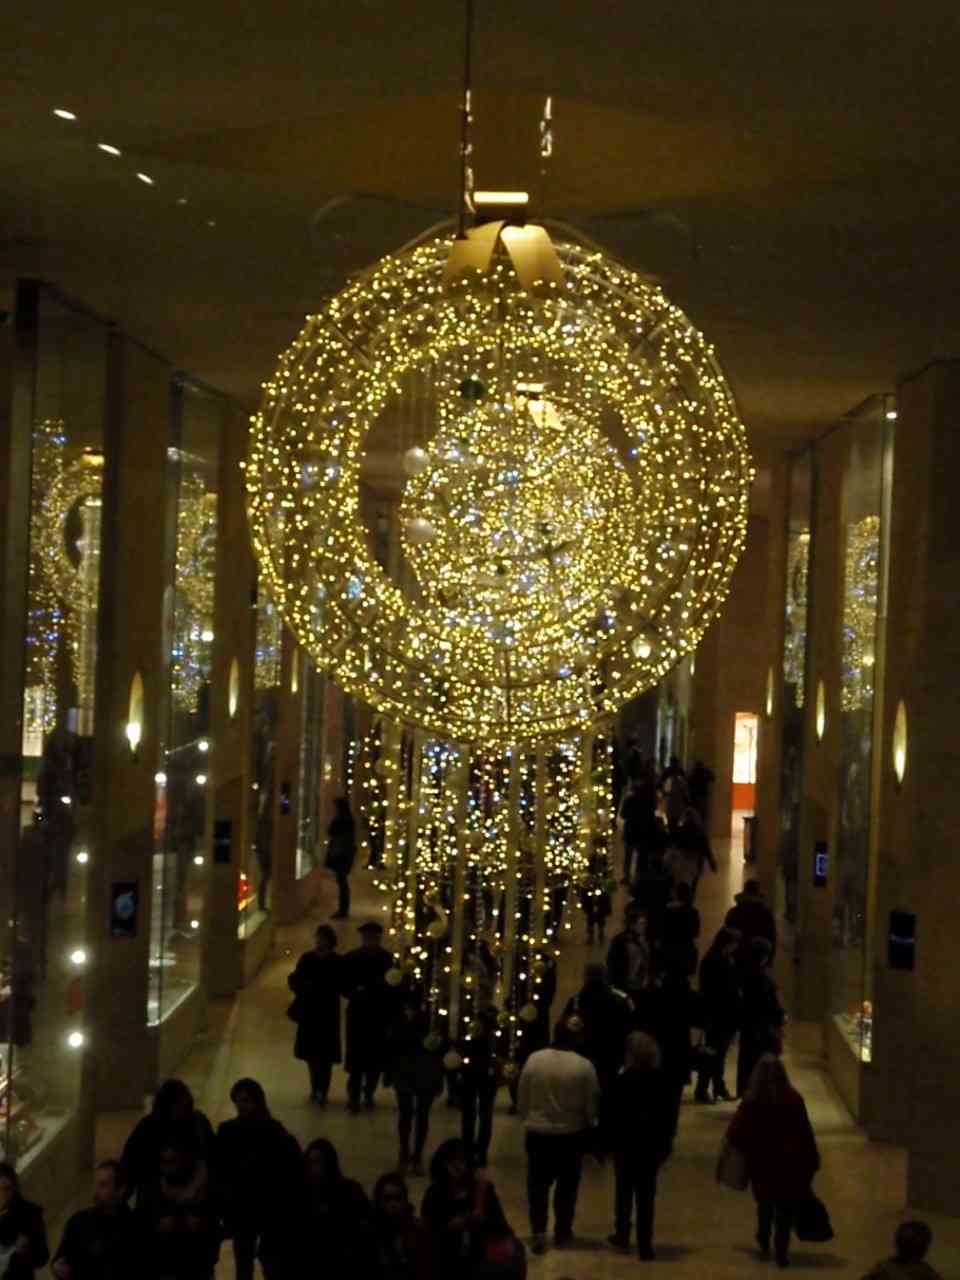 Λεπτομέρεια από την Χριστουγεννιάτικη διακόσμηση στο Carousel, στο Λούβρο. Ποιος είπε ότι τα μουσεία δεν συμμετέχουν στη χριστουγεννιάτικη φρενίτιδα;